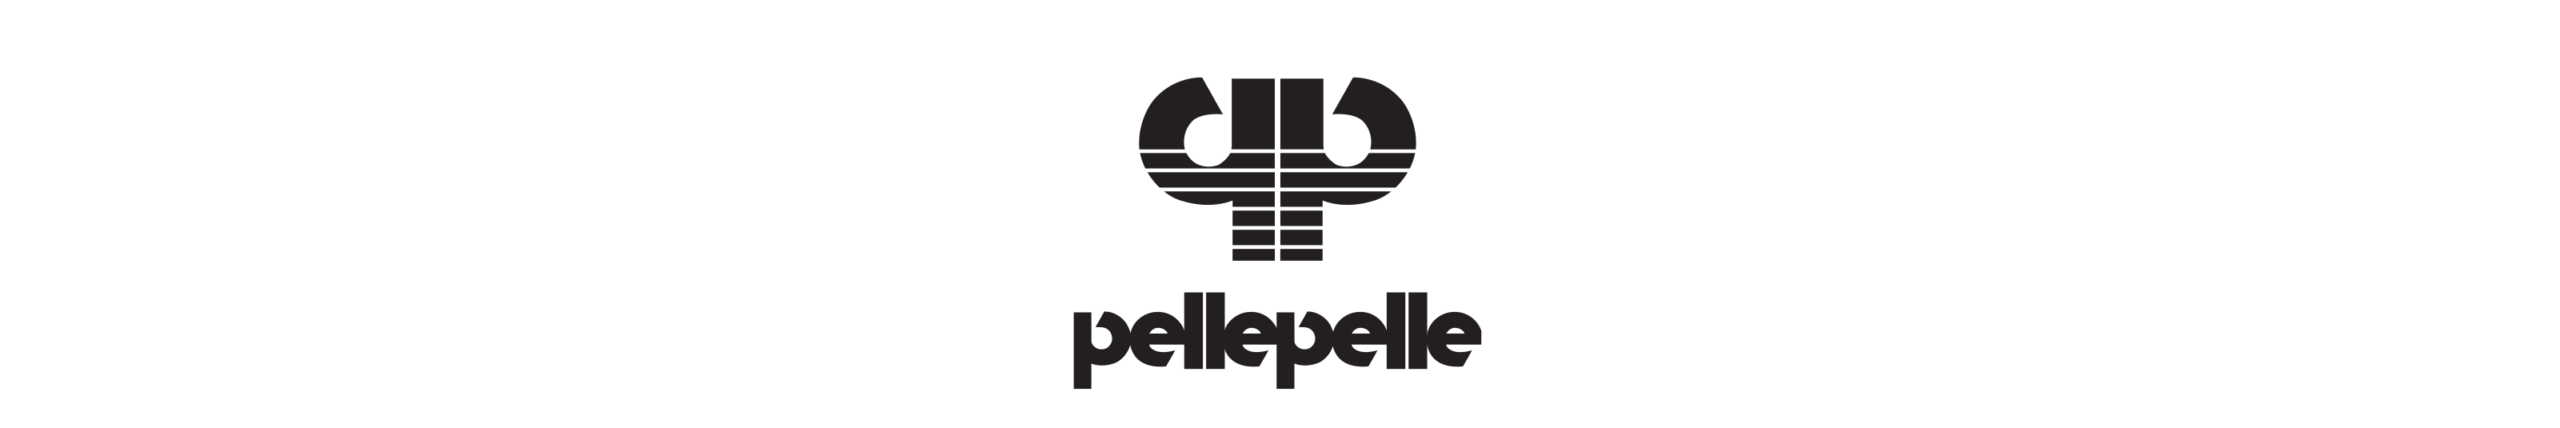 Pelle Pelle advertising logo